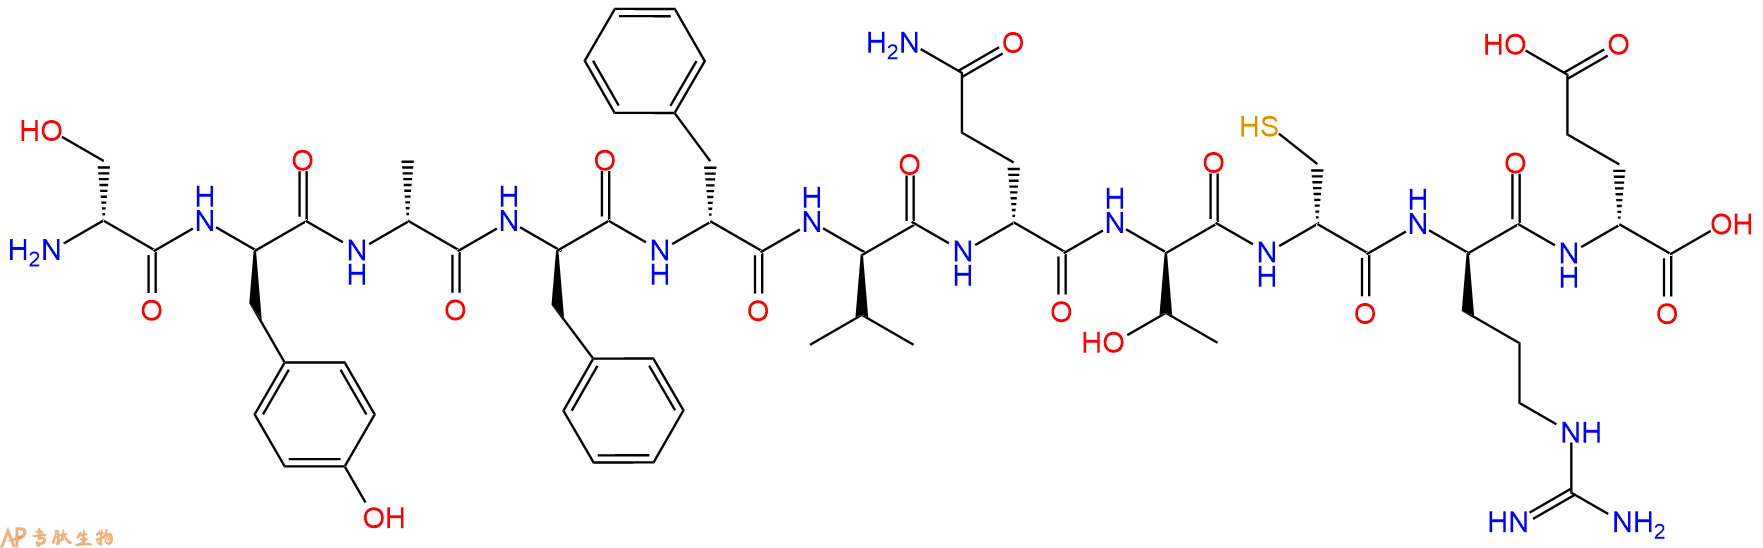 专肽生物产品H2N-DSer-DTyr-DAla-DPhe-DPhe-DVal-DGln-DThr-DCys-D